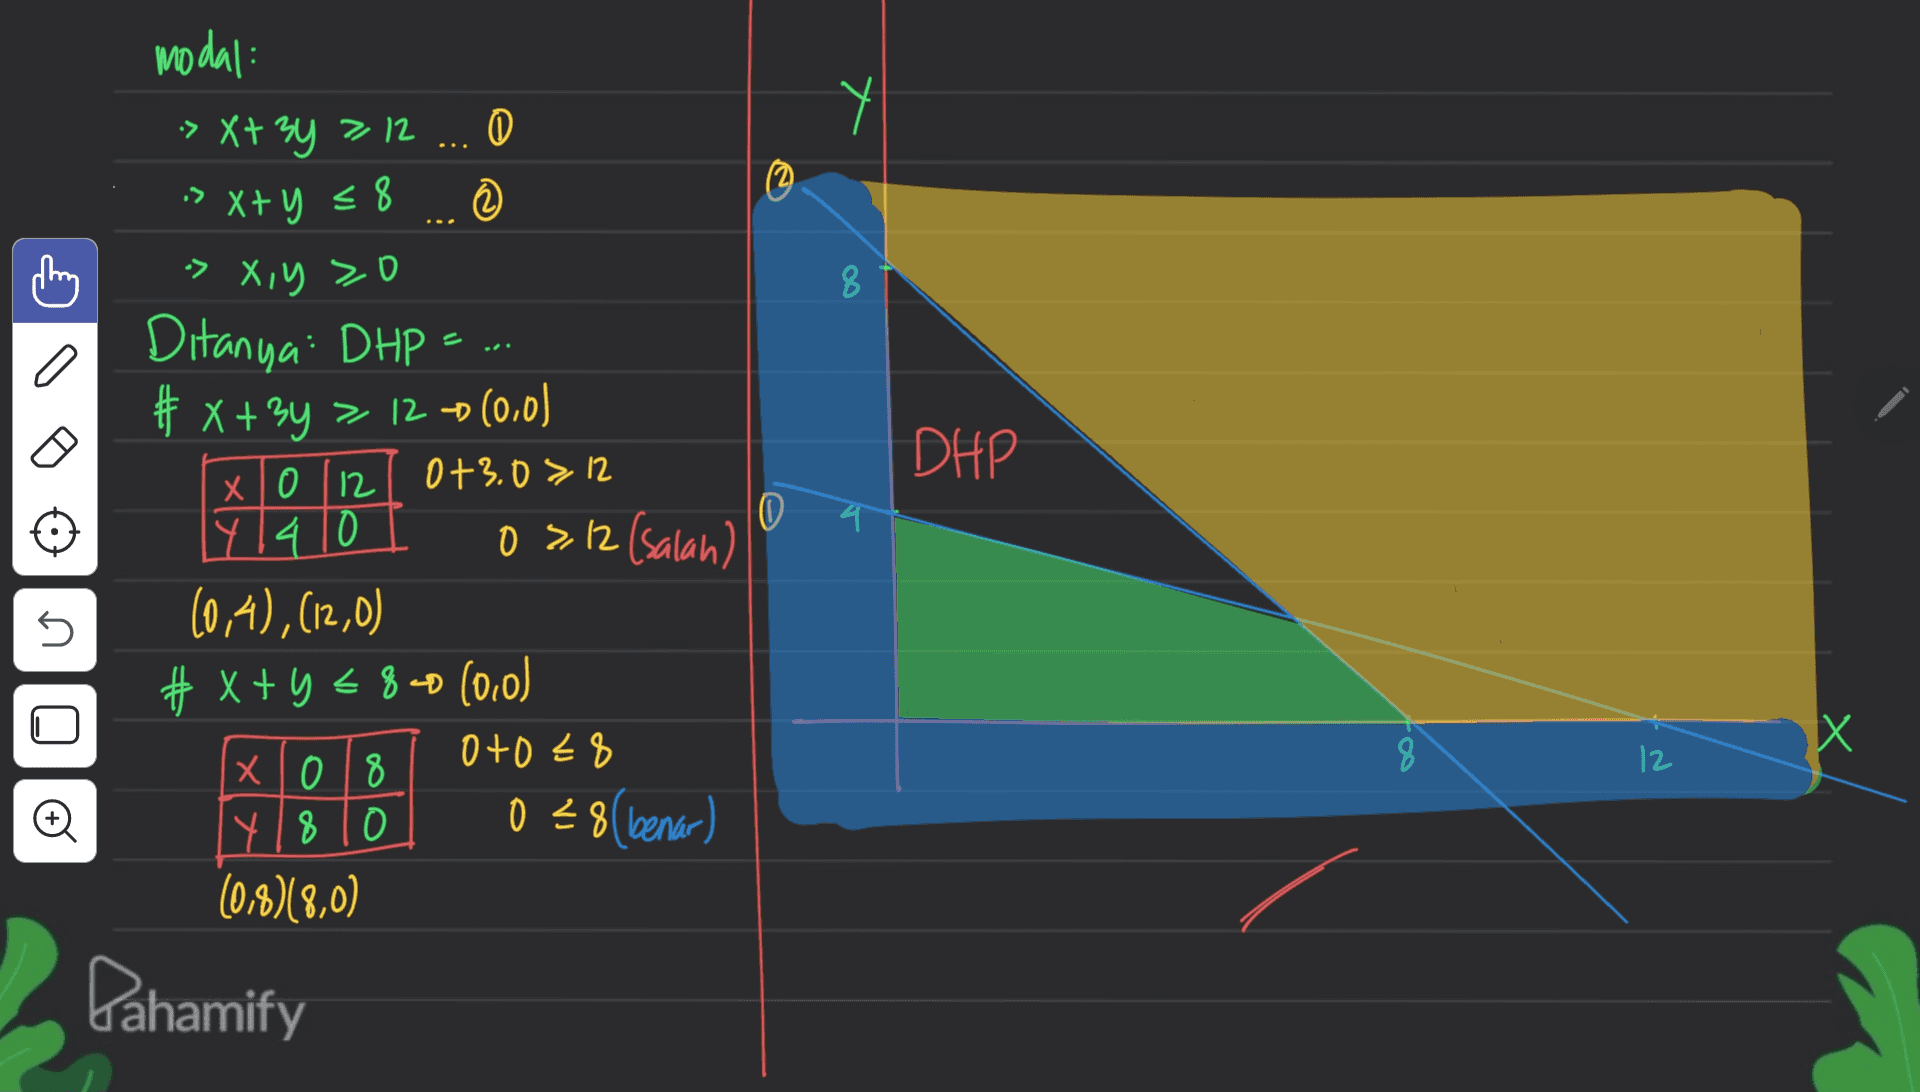 modal: -> X+34 7 12 ... X+ -> X+ y = 8 © > 0 2 ar nix c. 8 a DHP LI | О | x 4 Ditanya DHP = # x + 3y > 12 0(0,0) 0+3.0 > 12 0 14 14 10 03.12 (salan) (0,4), (12,0) # x+y=840 (0,0) x 108 0+0€8 5 Х 8 12 O 8 K 028 benar) (0,8)(8,0) Pahamify 